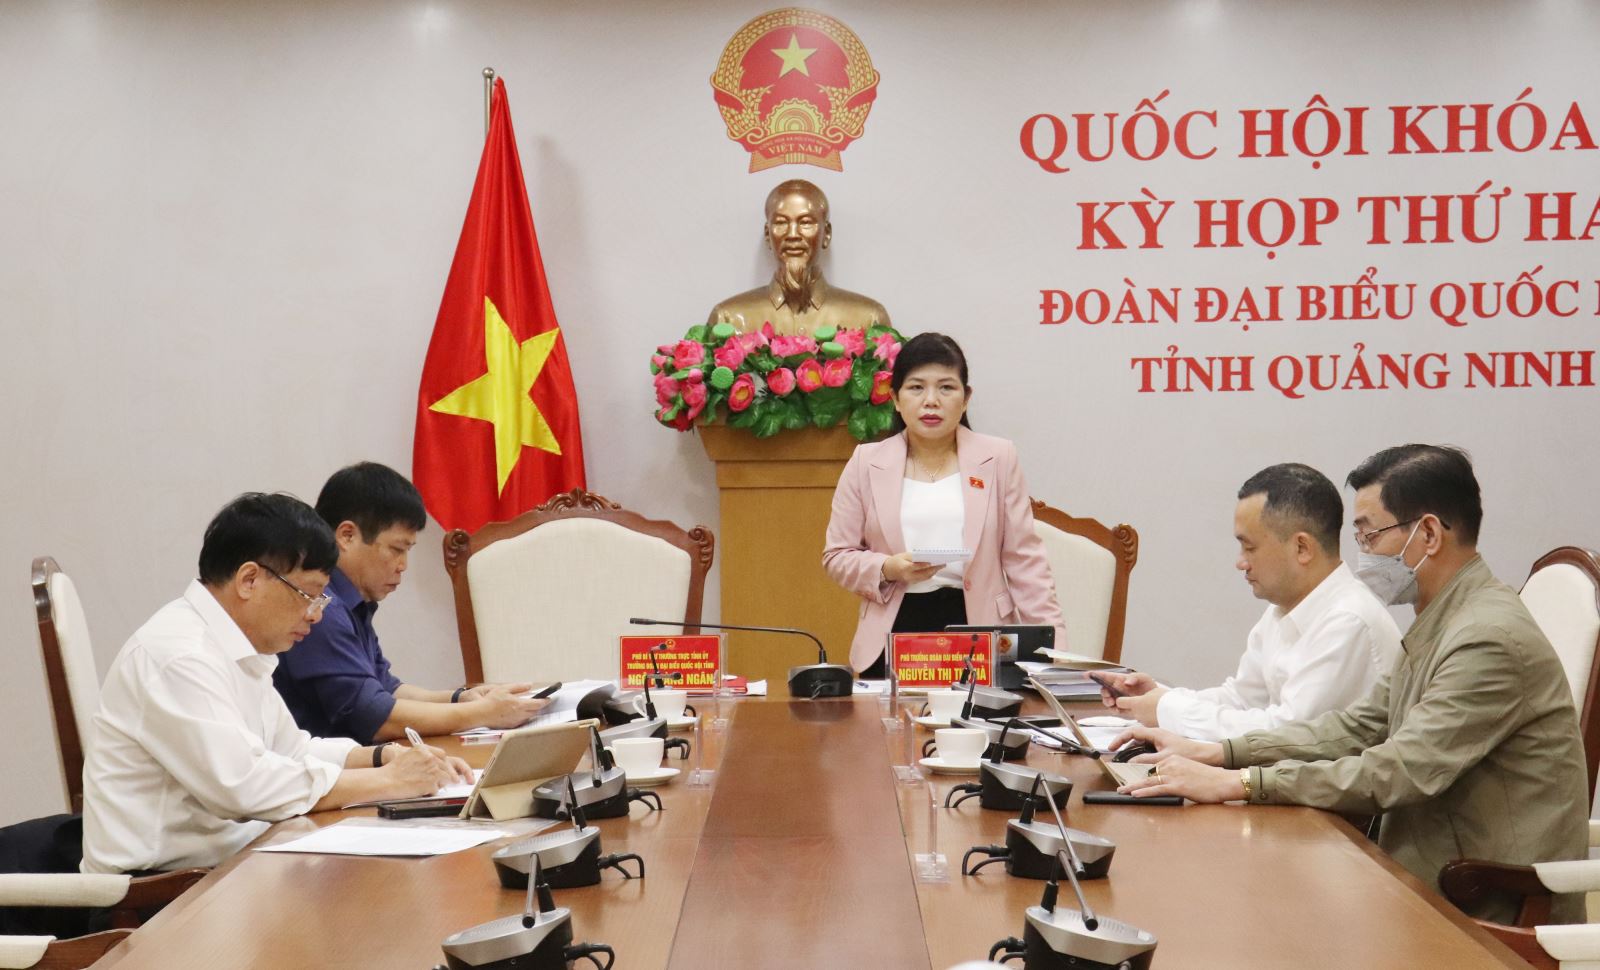 Phó Trưởng đoàn ĐBQH tỉnh Quảng Ninh Nguyễn Thị Thu Hà phát biểu ý kiến trong phiên thảo luận sáng 25.10 - ảnh: Mạnh Tuân